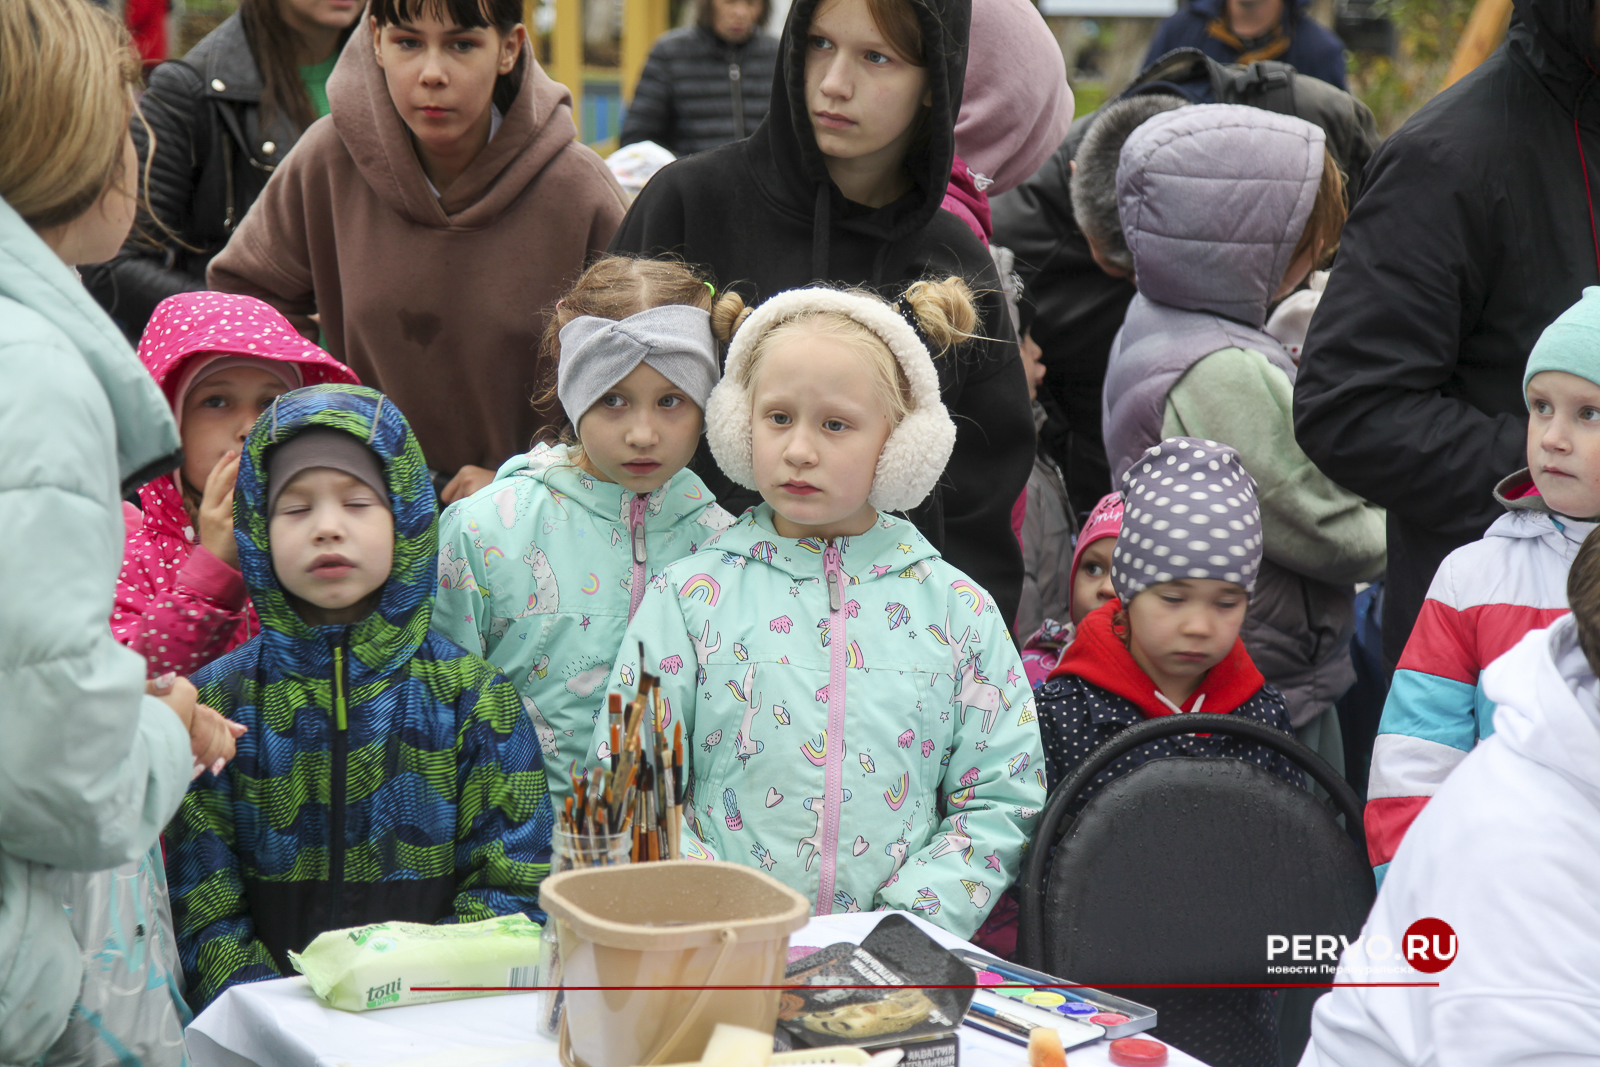 В Первоуральске состоялось торжественное открытие «Парка ДК им. Ленина». Фотографии